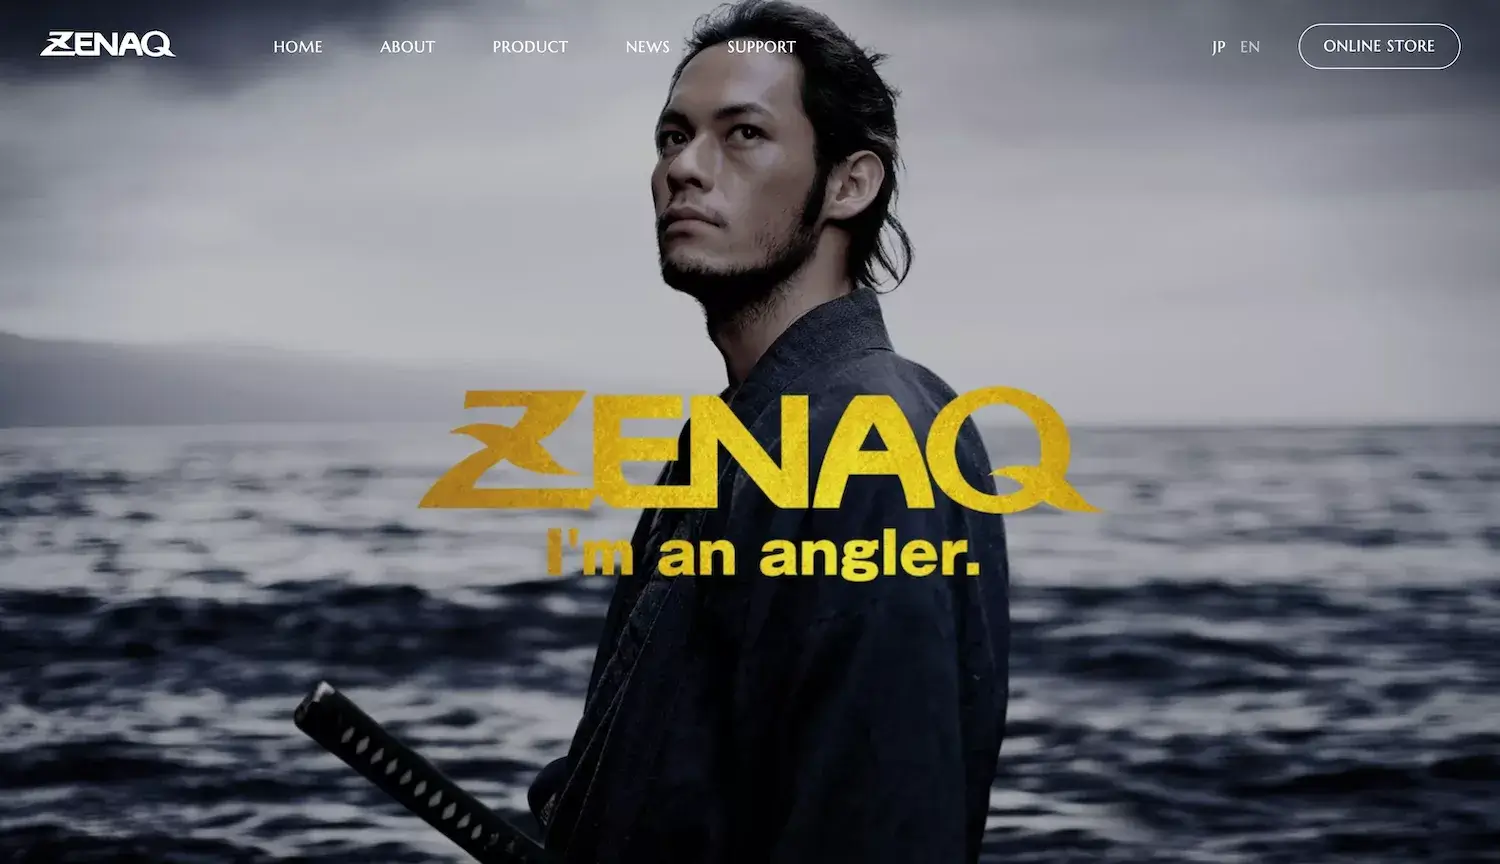 【制作実績】ZENAQ のブランドサイトのフルリニューアルをしました